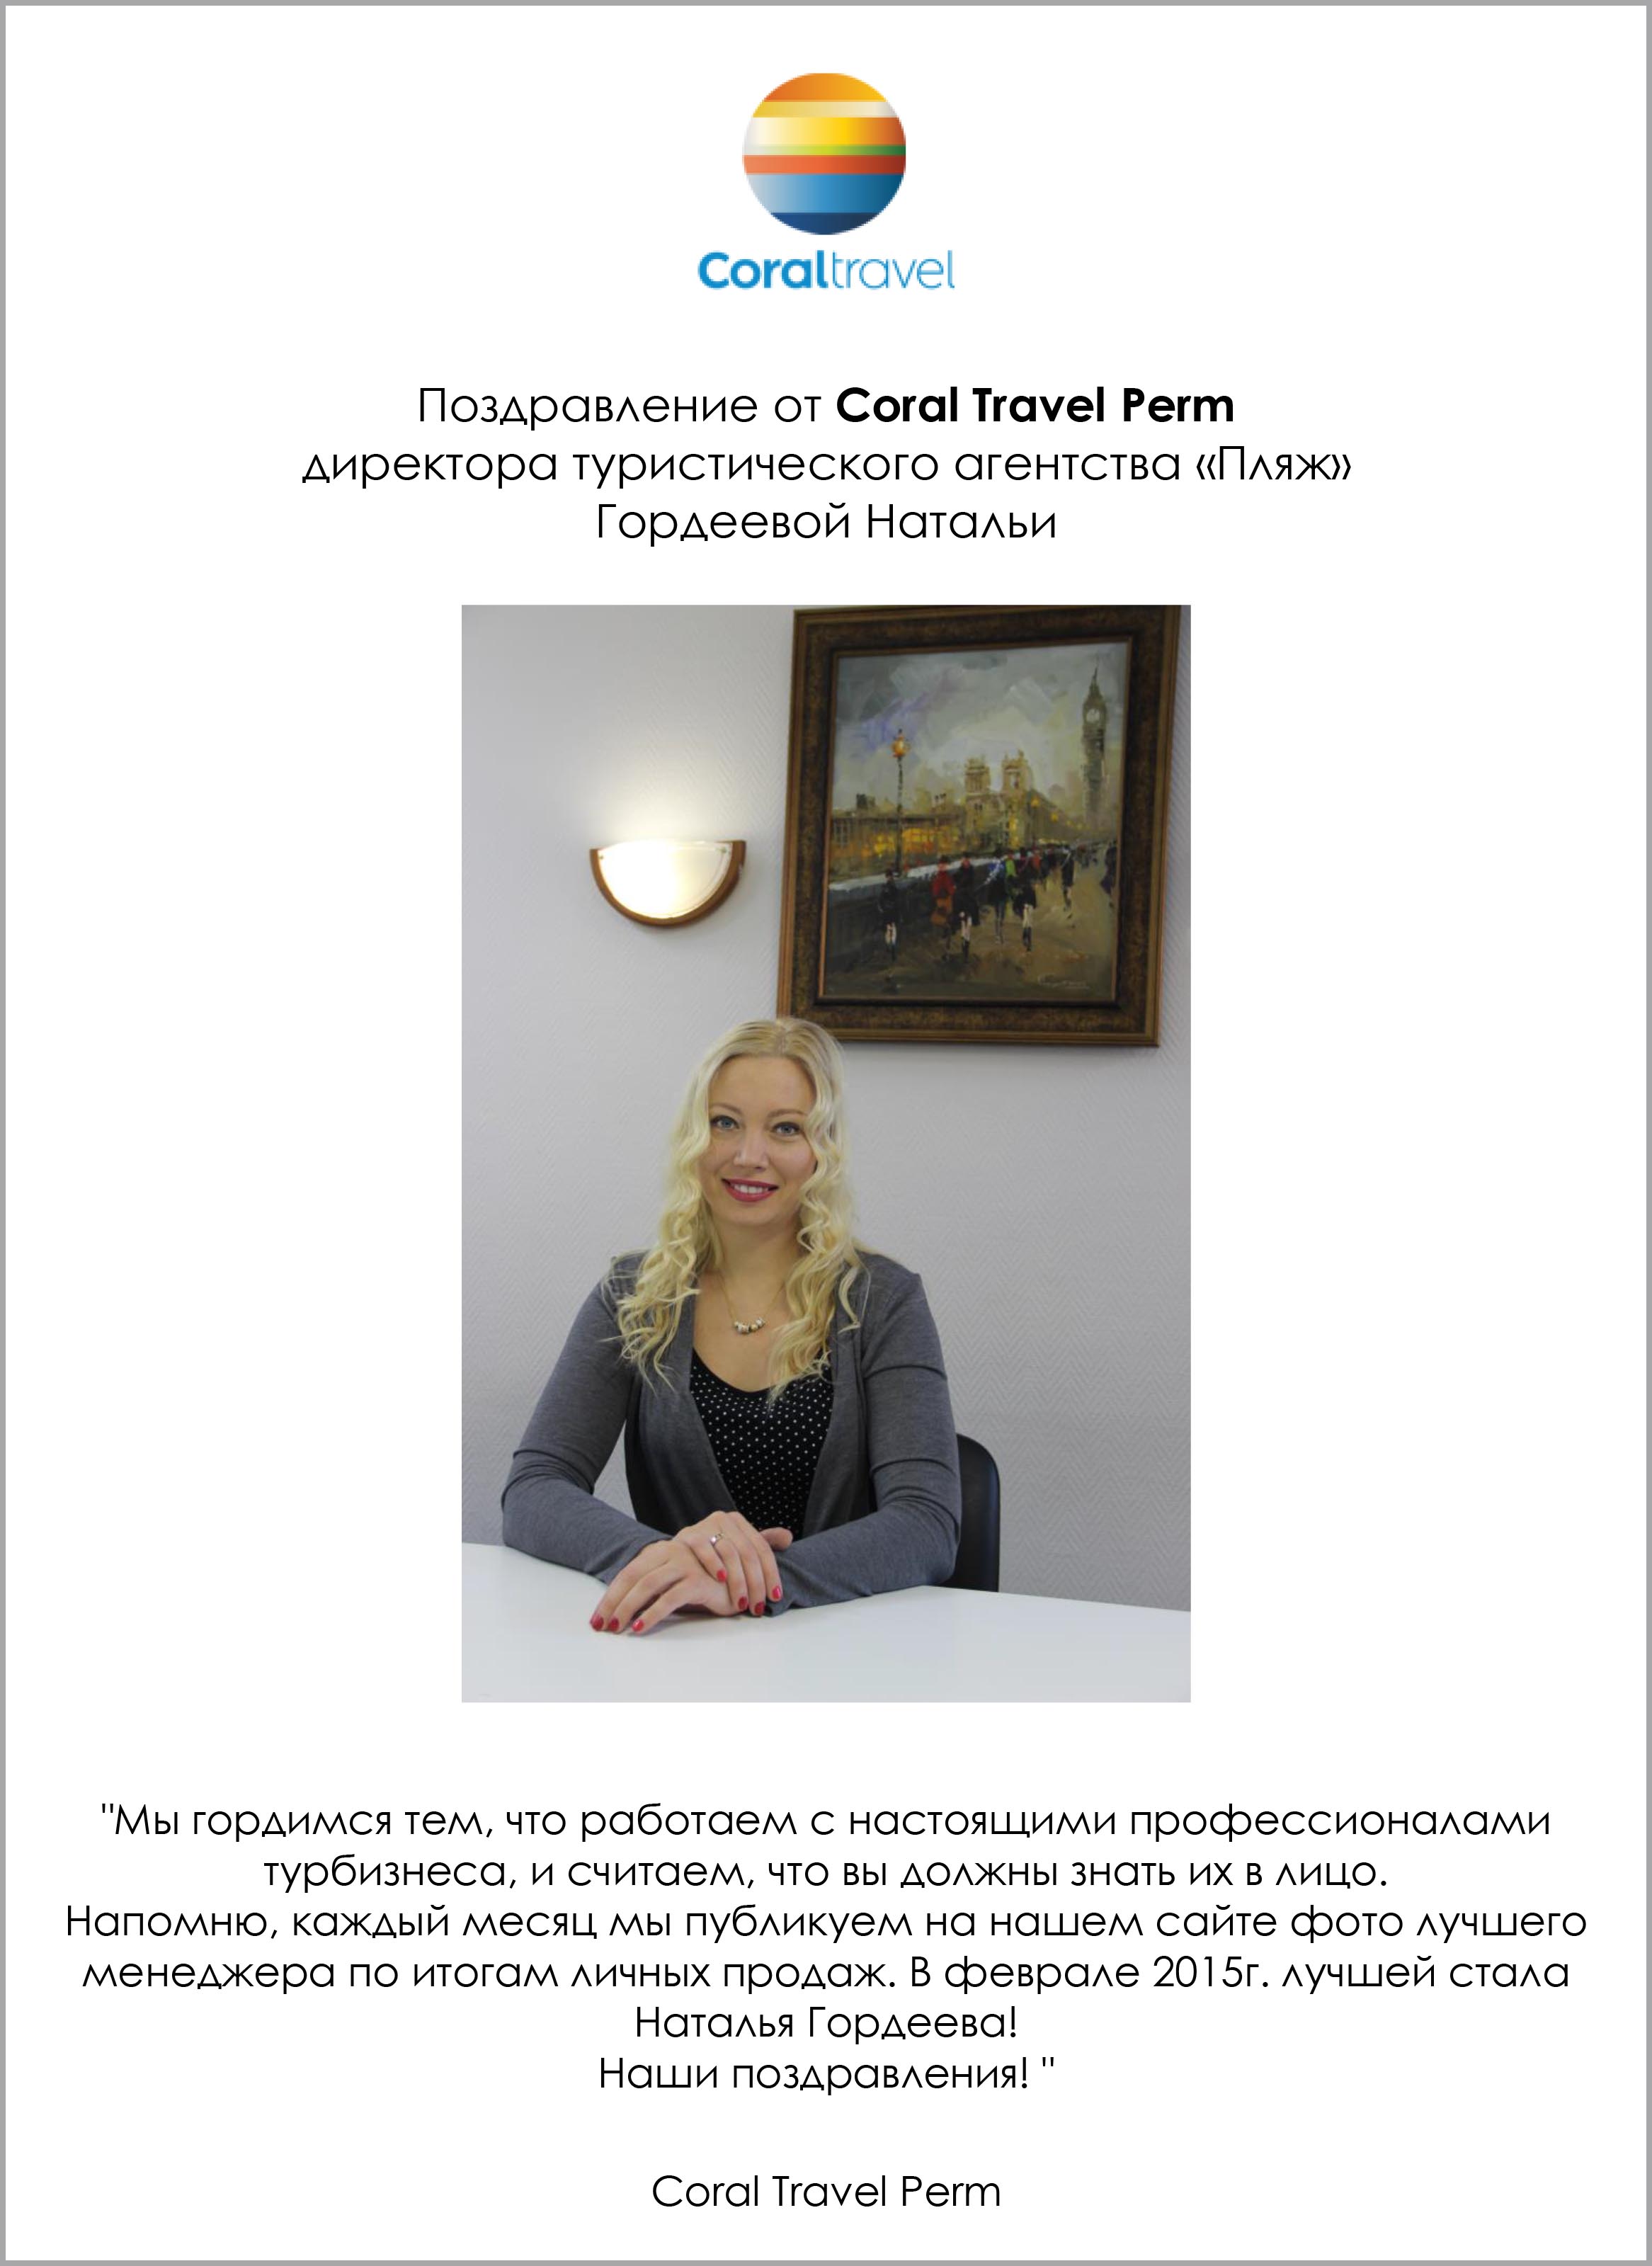 Поздравление Натальи Гордеевой от Coral Travel Perm